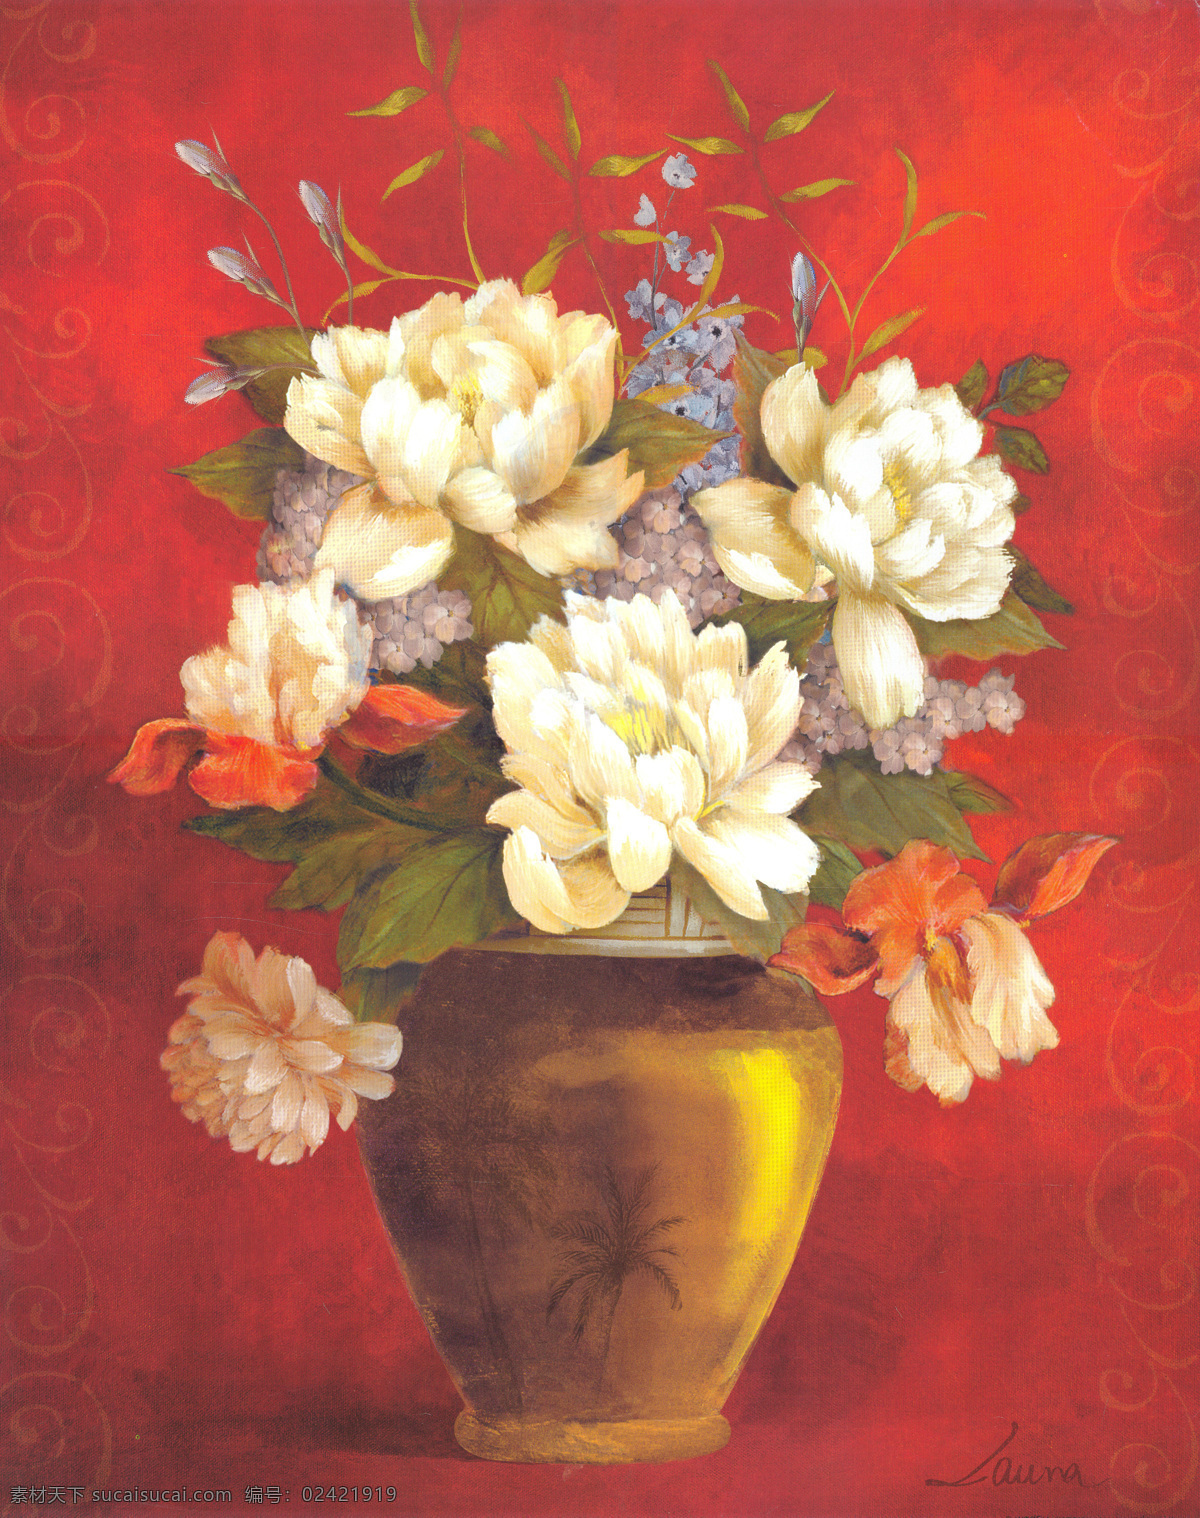 鲜花 静物 油画 花卉 花瓶 鲜花油画 油画花朵 绘画艺术 装饰画 无框画 其他艺术 文化艺术 红色